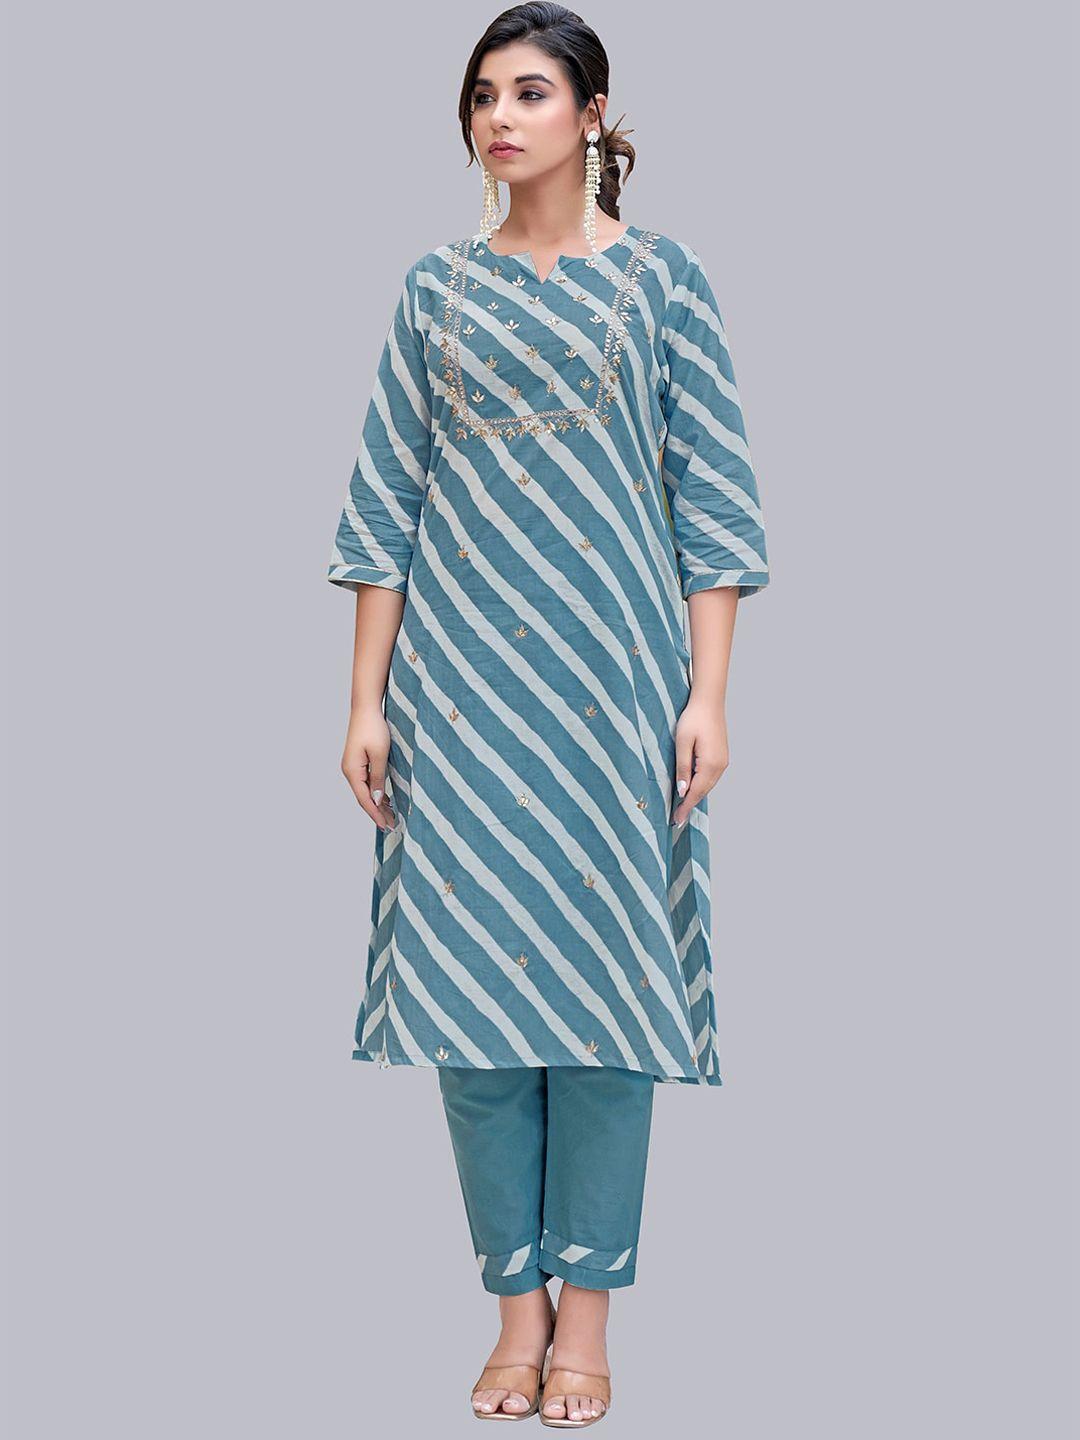 nh kapdewala women blue striped pure cotton kurta with trousers